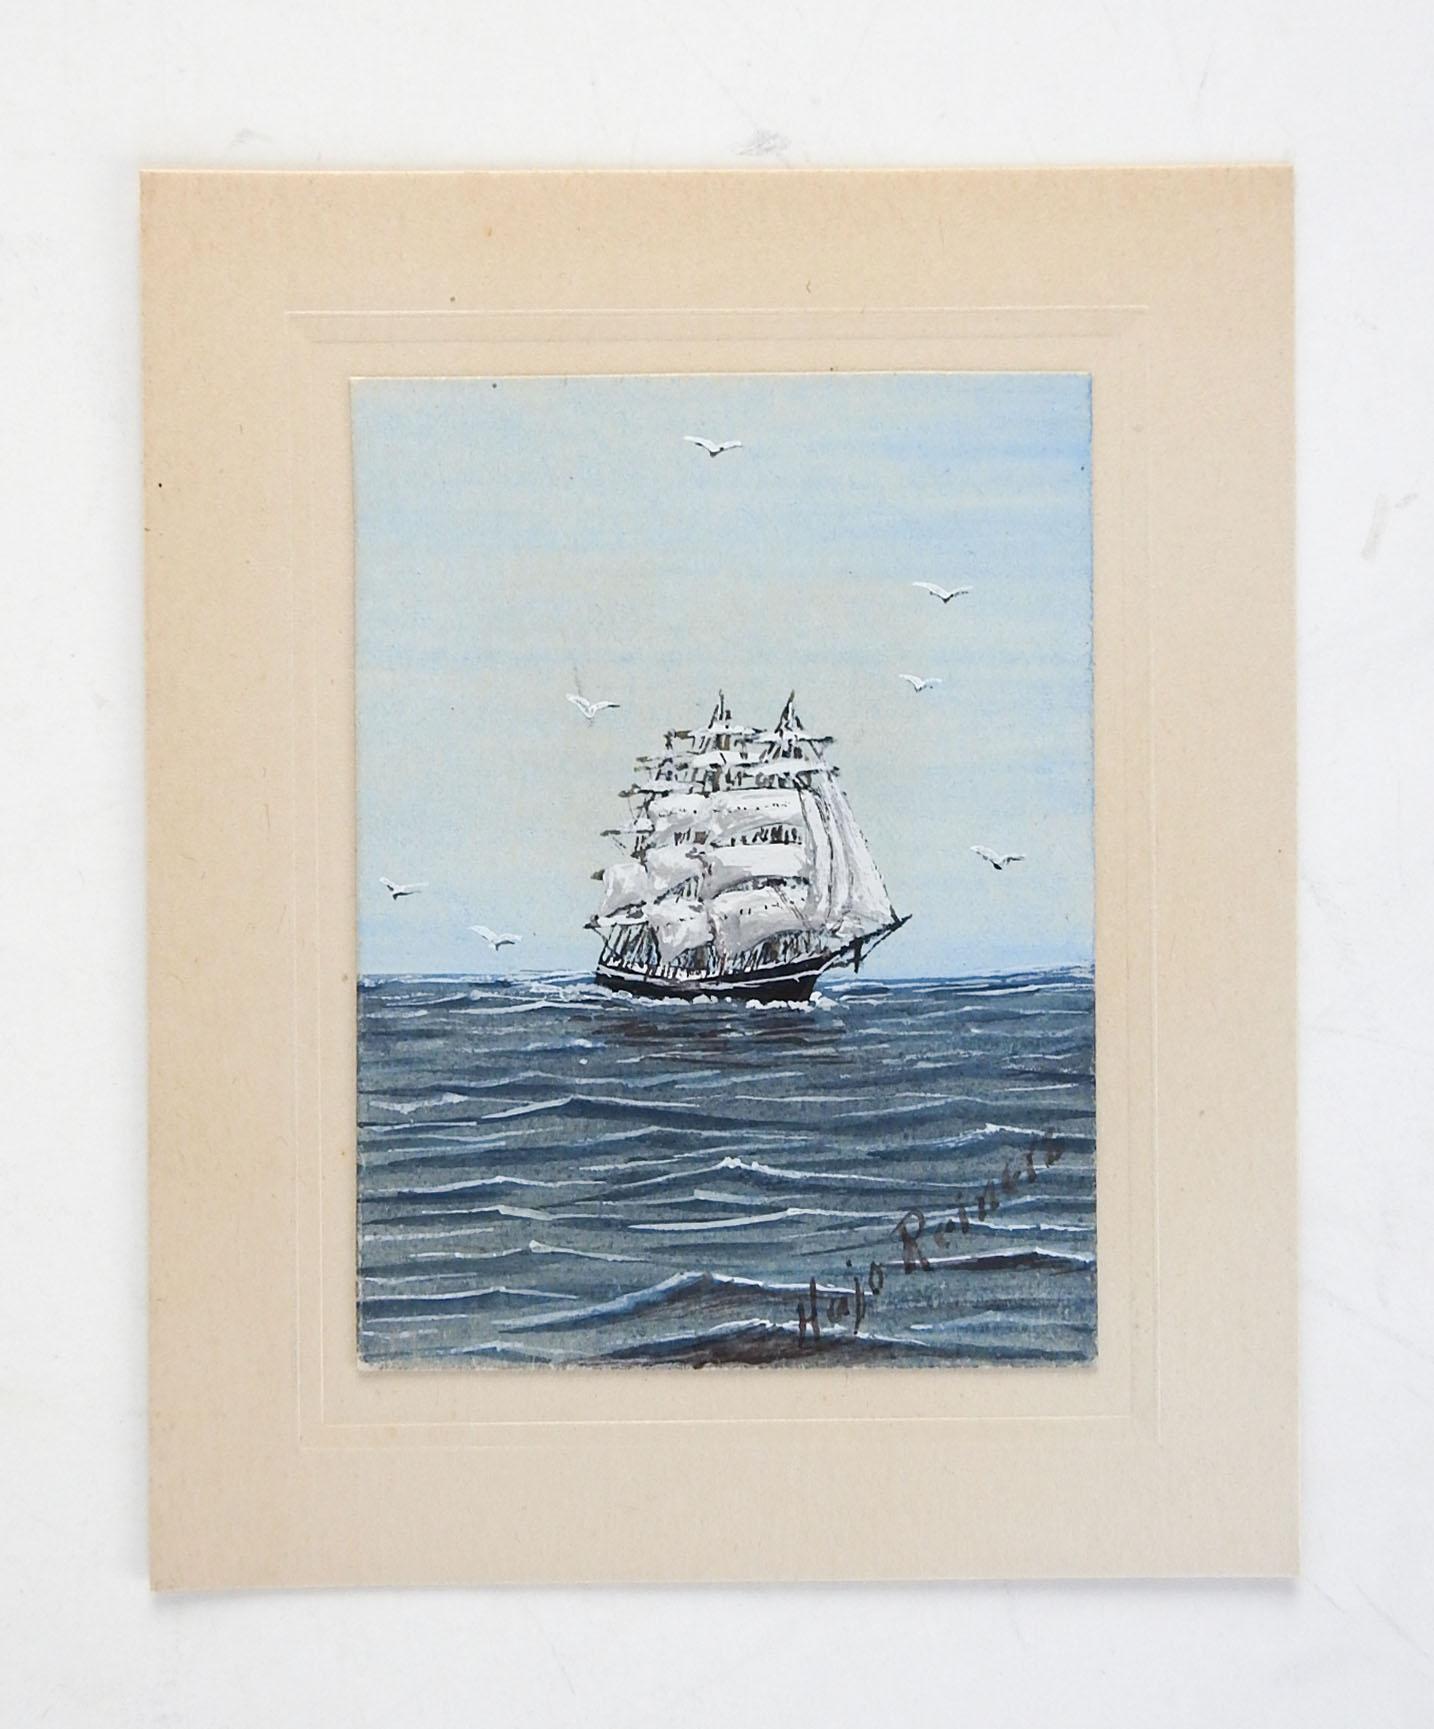 Aquarelle miniature sur papier d'un voilier par Hajo Reiners (20ème siècle) Texas. Signé en bas à droite. Peinture de 2,25' x 3